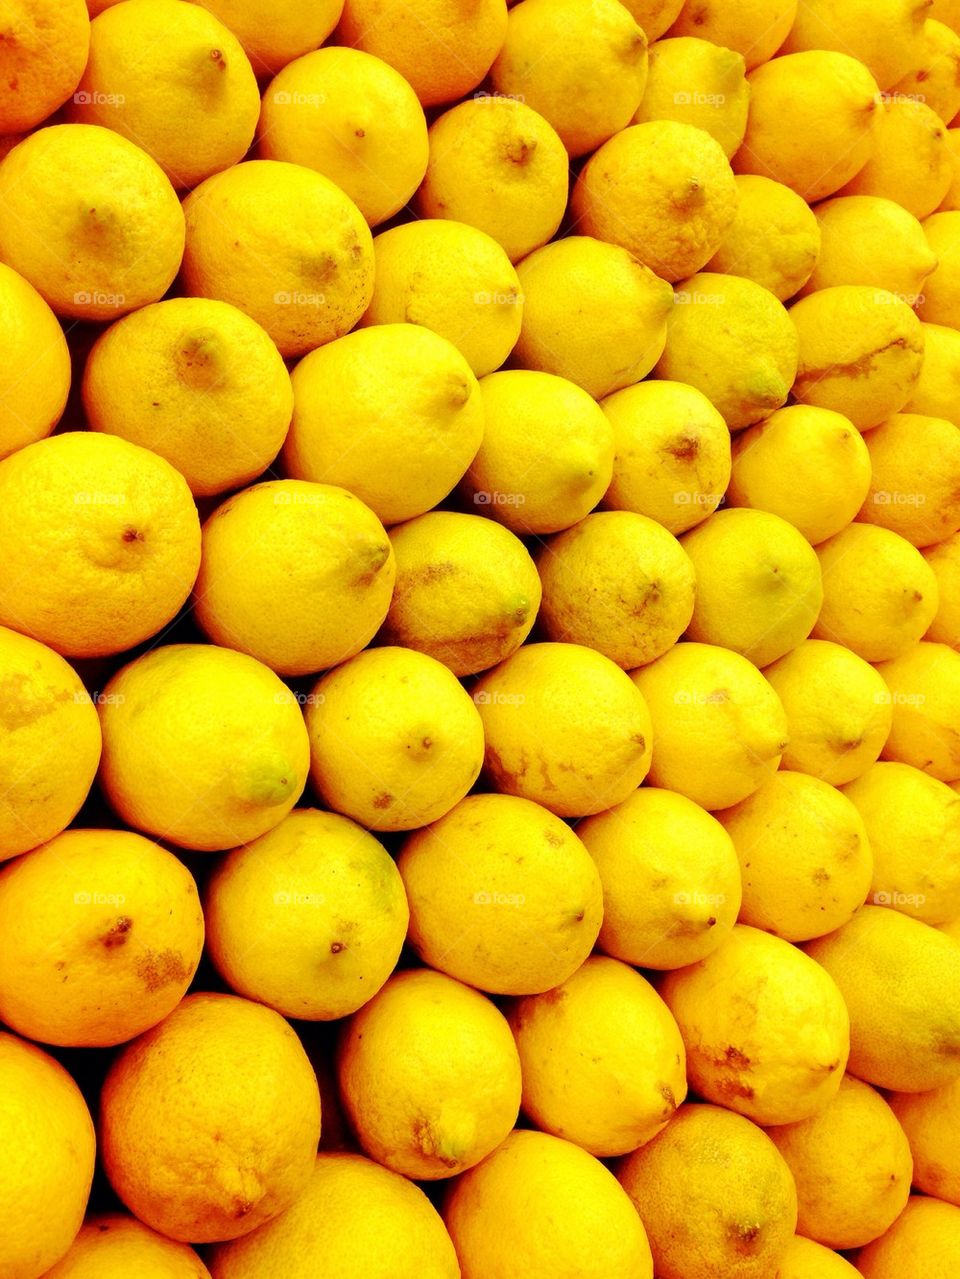 Lemon stand